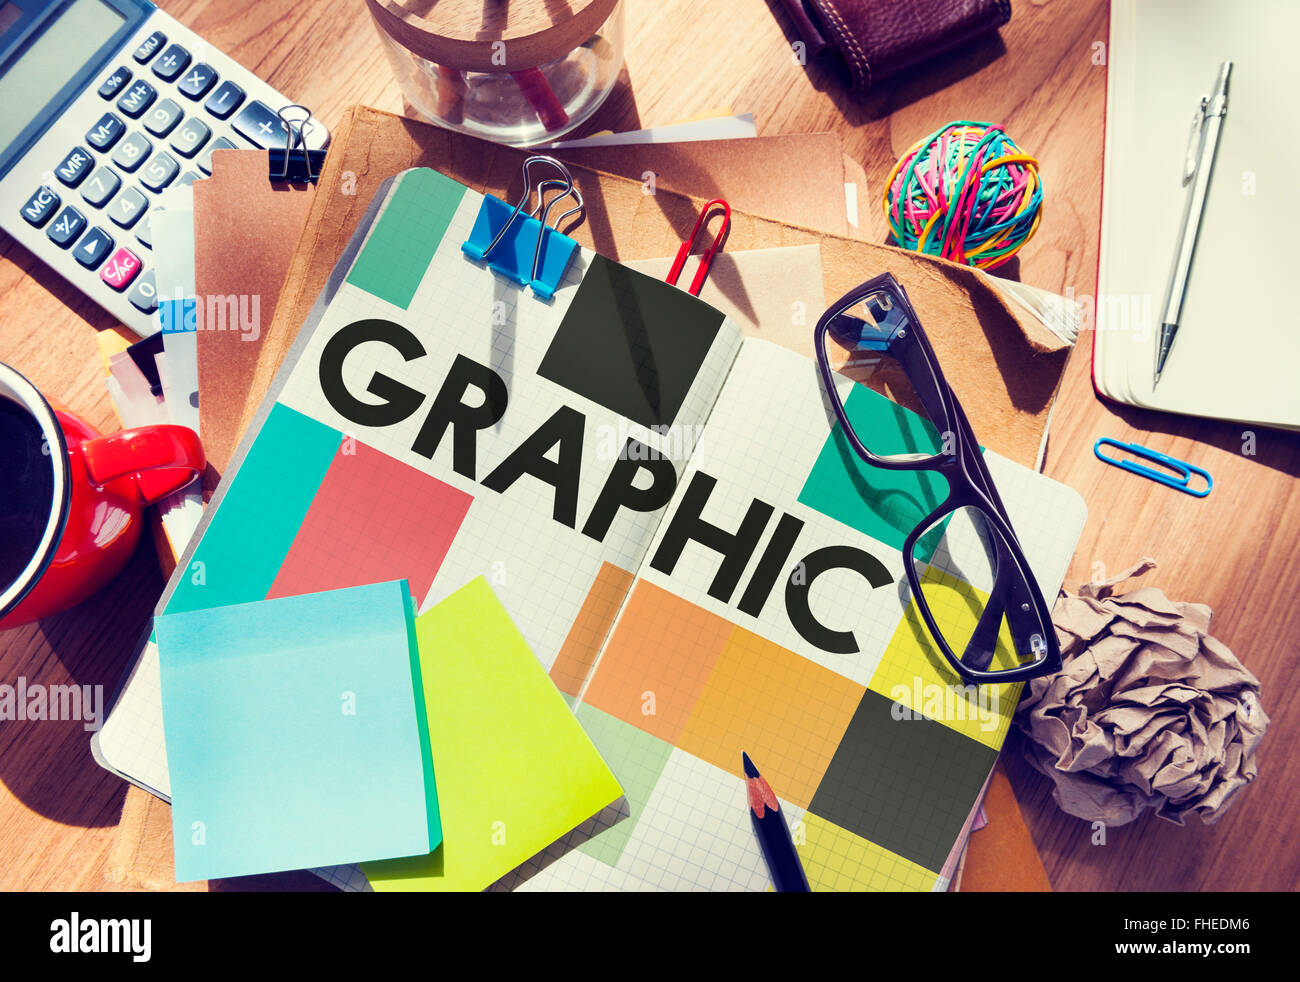 Graphic Creative Design Visual Art Concept Stock Photo